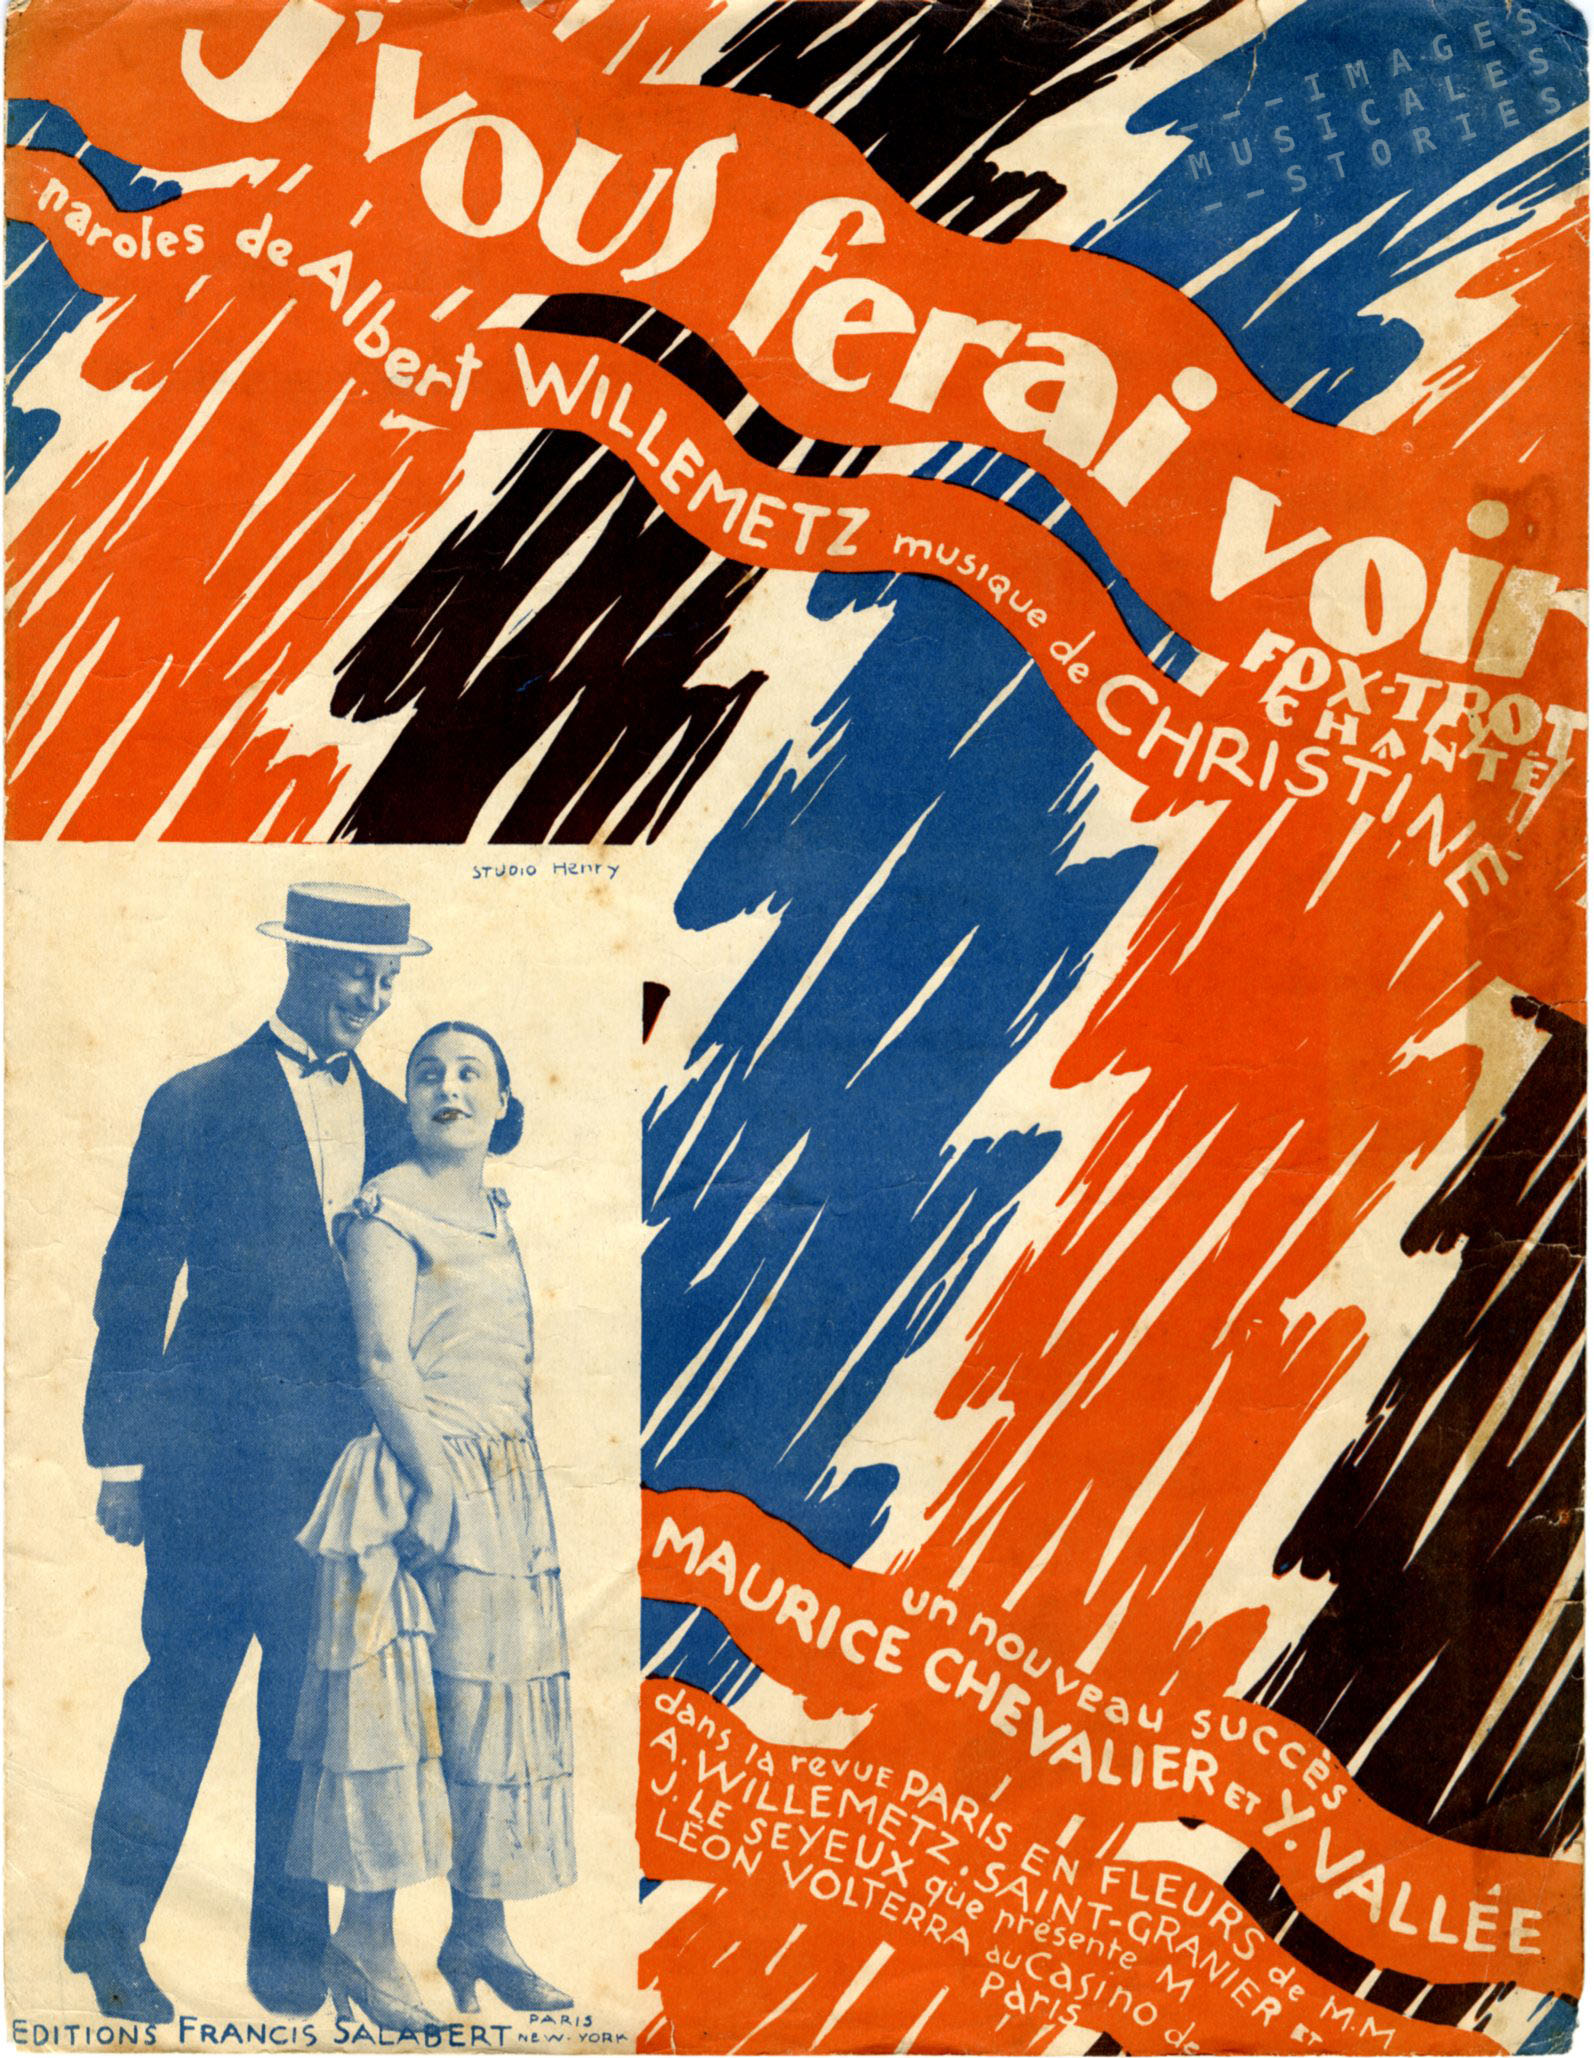 'J'vous ferai voir', illustrated by de Valerio (1925).